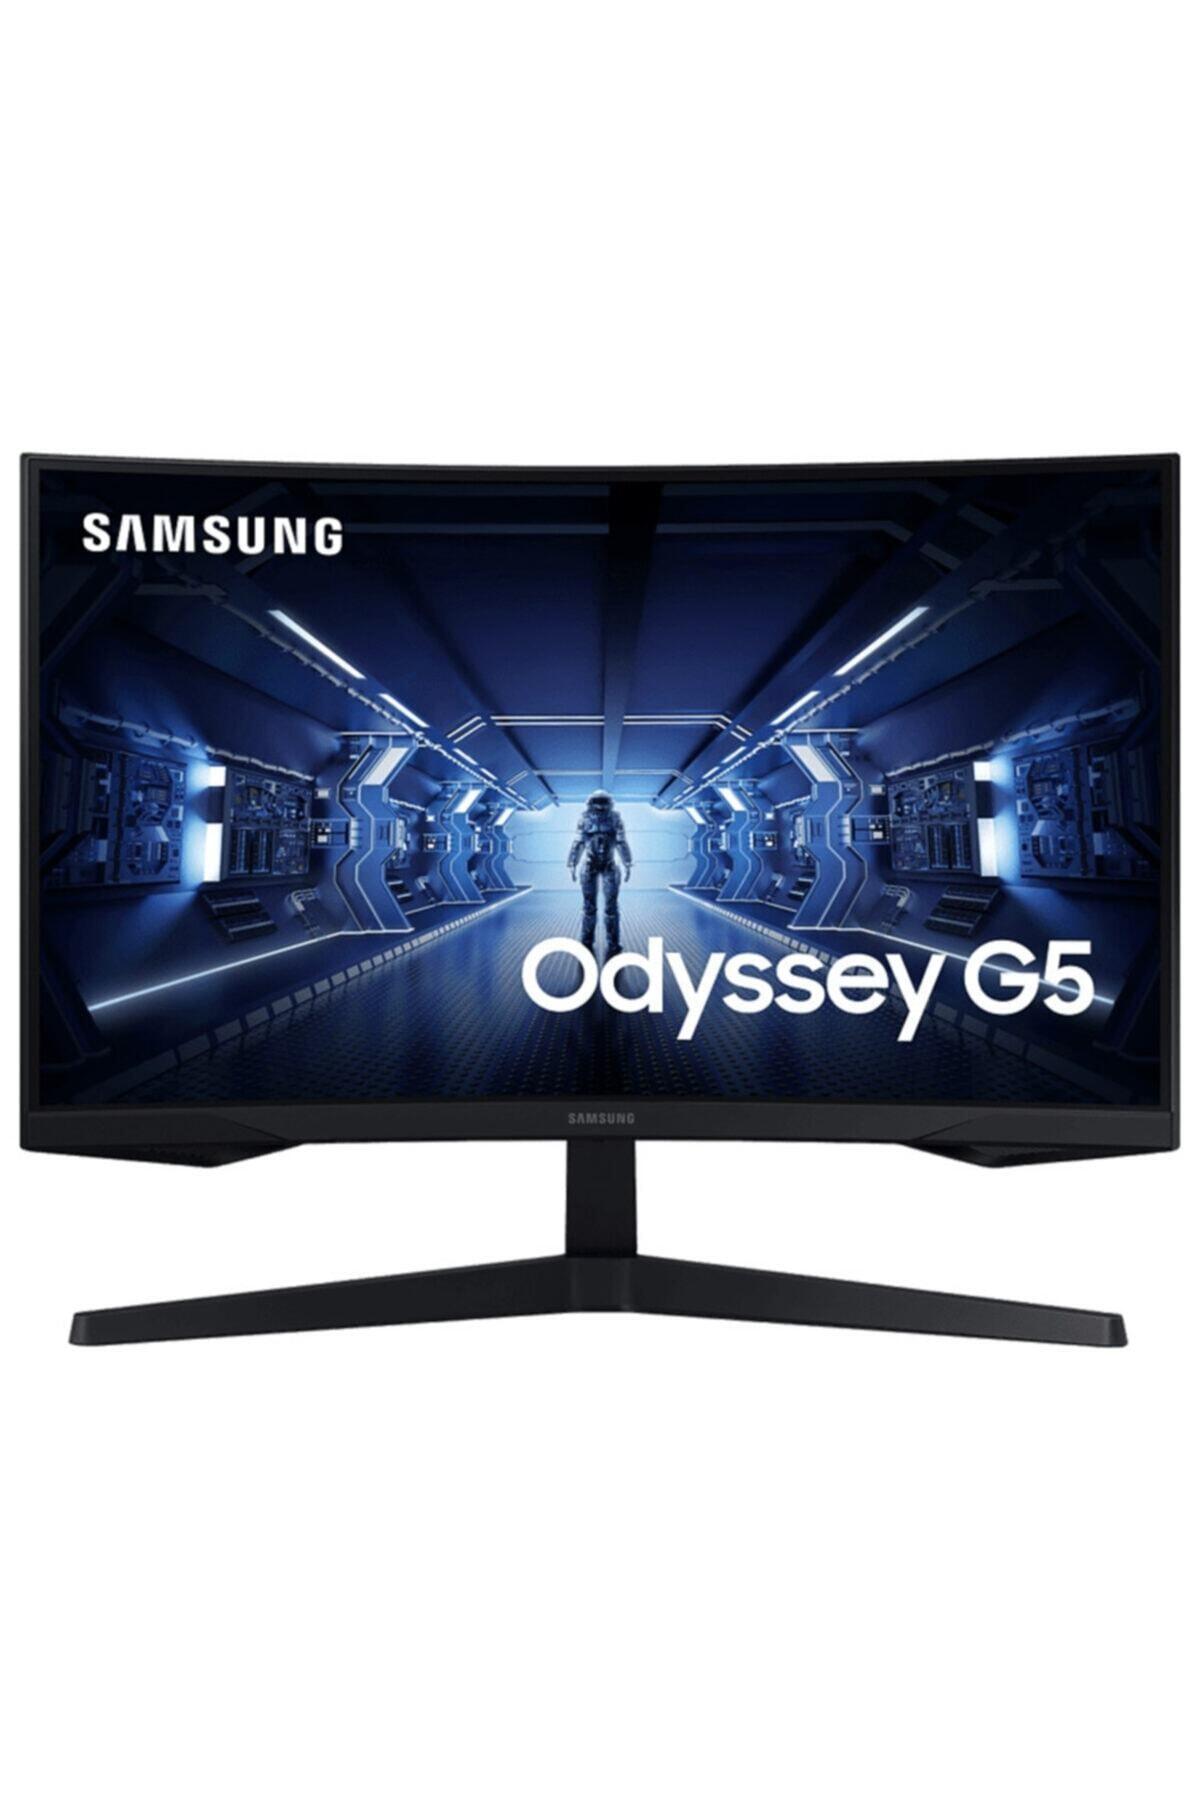 Samsung Odyssey G5 32" 2k 1ms 144hz - 4565 TL ( SATICI GÜVENİLİR DEĞİLDİR )